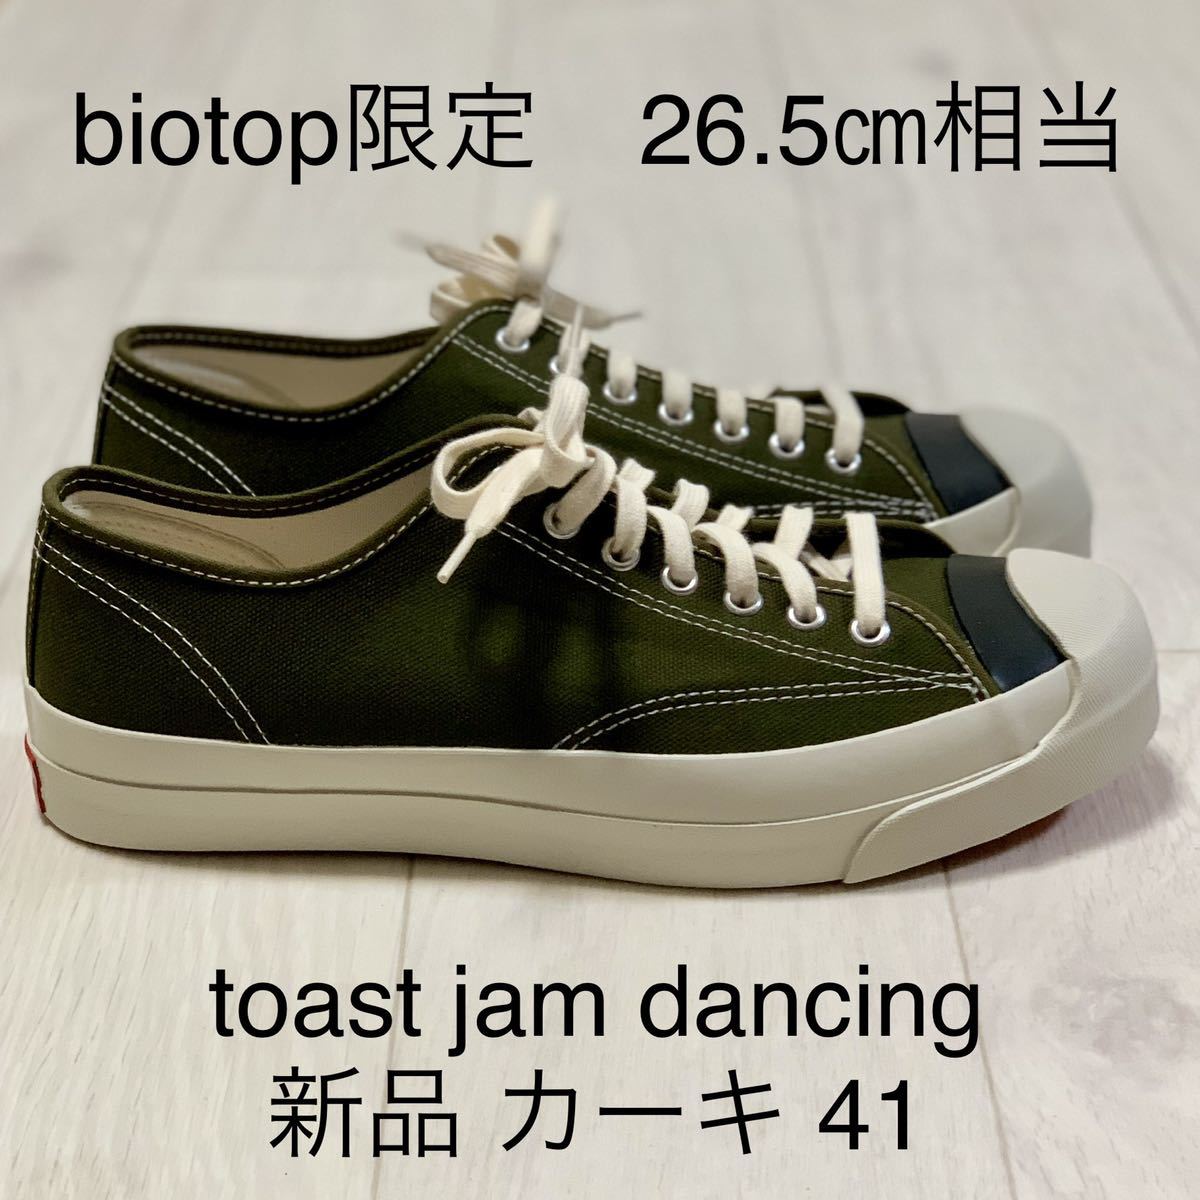 限定 新品 toast jam Dancing カーキ 41 26.5㎝相当 トースト ジャム made in gm shantii ムラジュン コンバース ジャックパーセル CT70_画像1